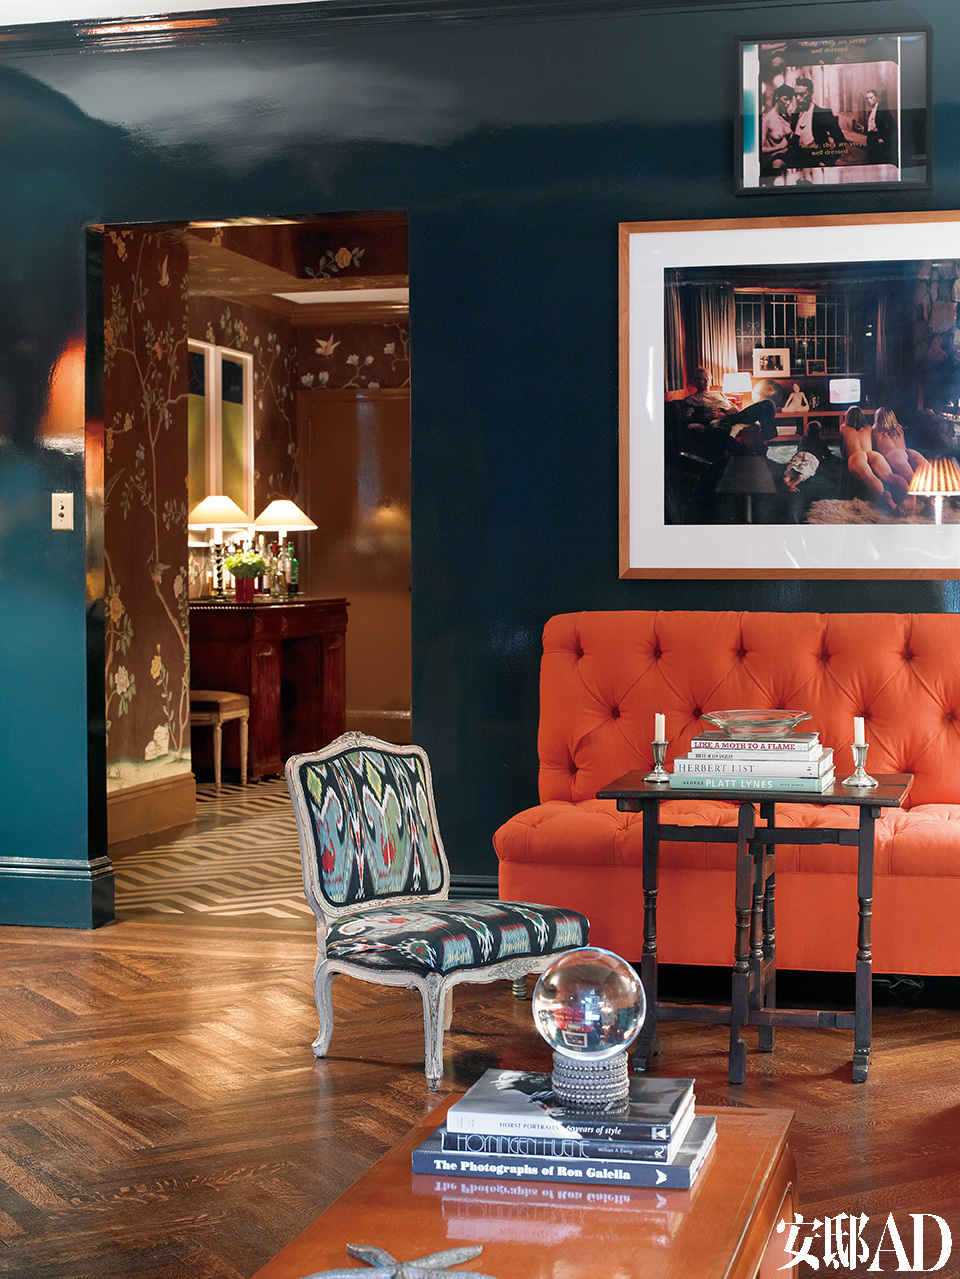 墙面底色是荷兰画坛巨匠弗美 尔最钟意的群青色，沙发面料为纱线扎染布，设计师为椅子重新换了面料。墙上挂着著名女摄影师特尔尼∙ 吉伦(Tierney Gearon)的作品。